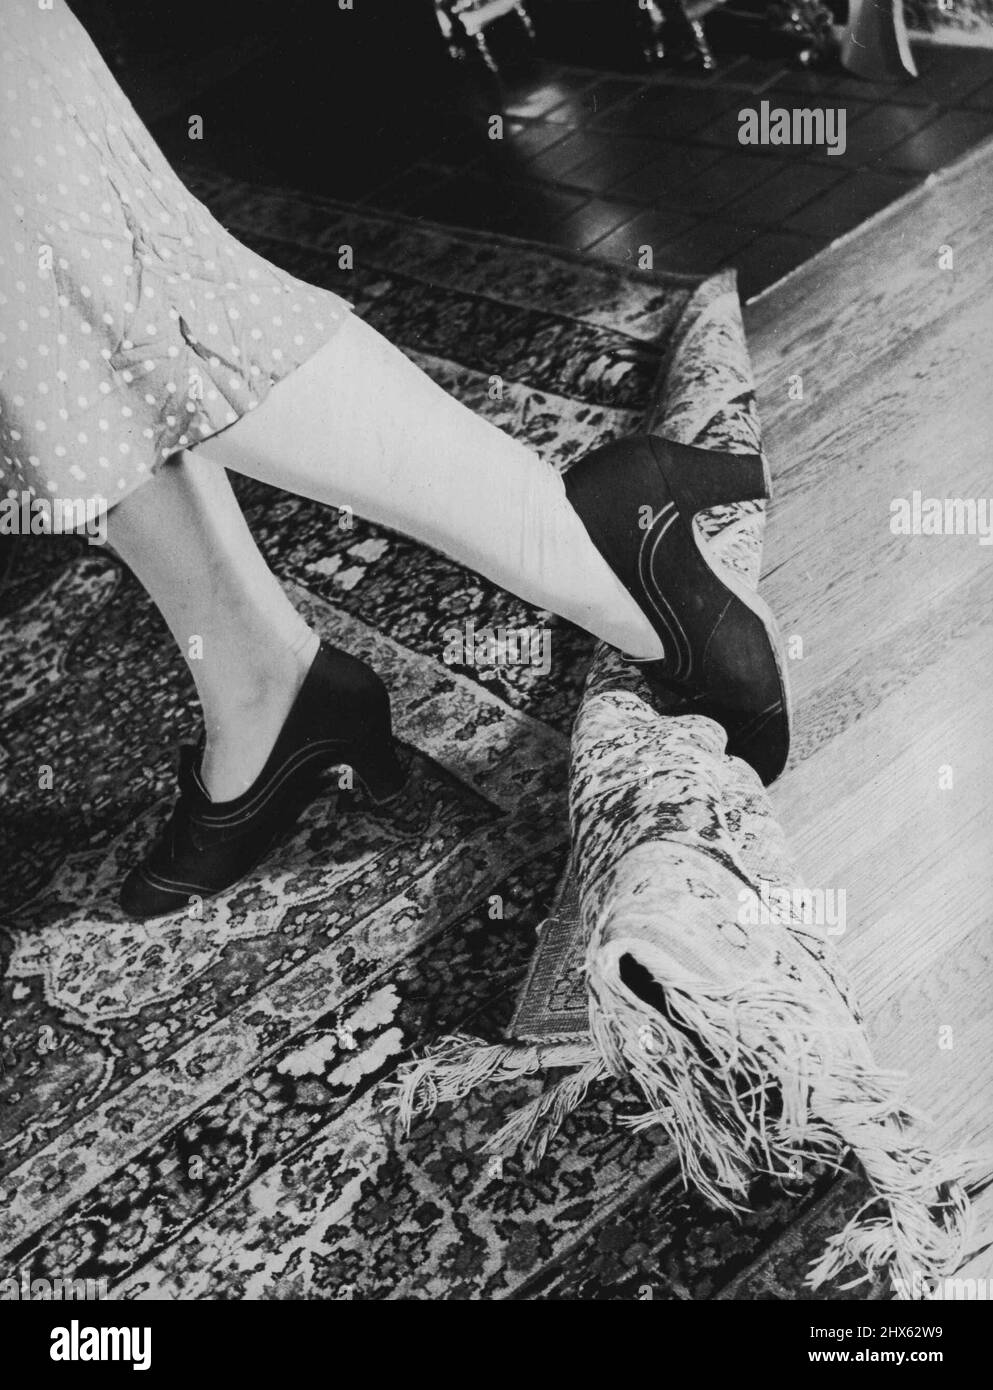 Verankern Sie kleine Teppiche oder Ecken großer Teppiche. Kleine auf gewachsten Böden rutschen leicht und pitchen für gefährliche Tumbles Homefolks. 25. November 1939. (Foto von Warner Wolff, Camera Features). Stockfoto